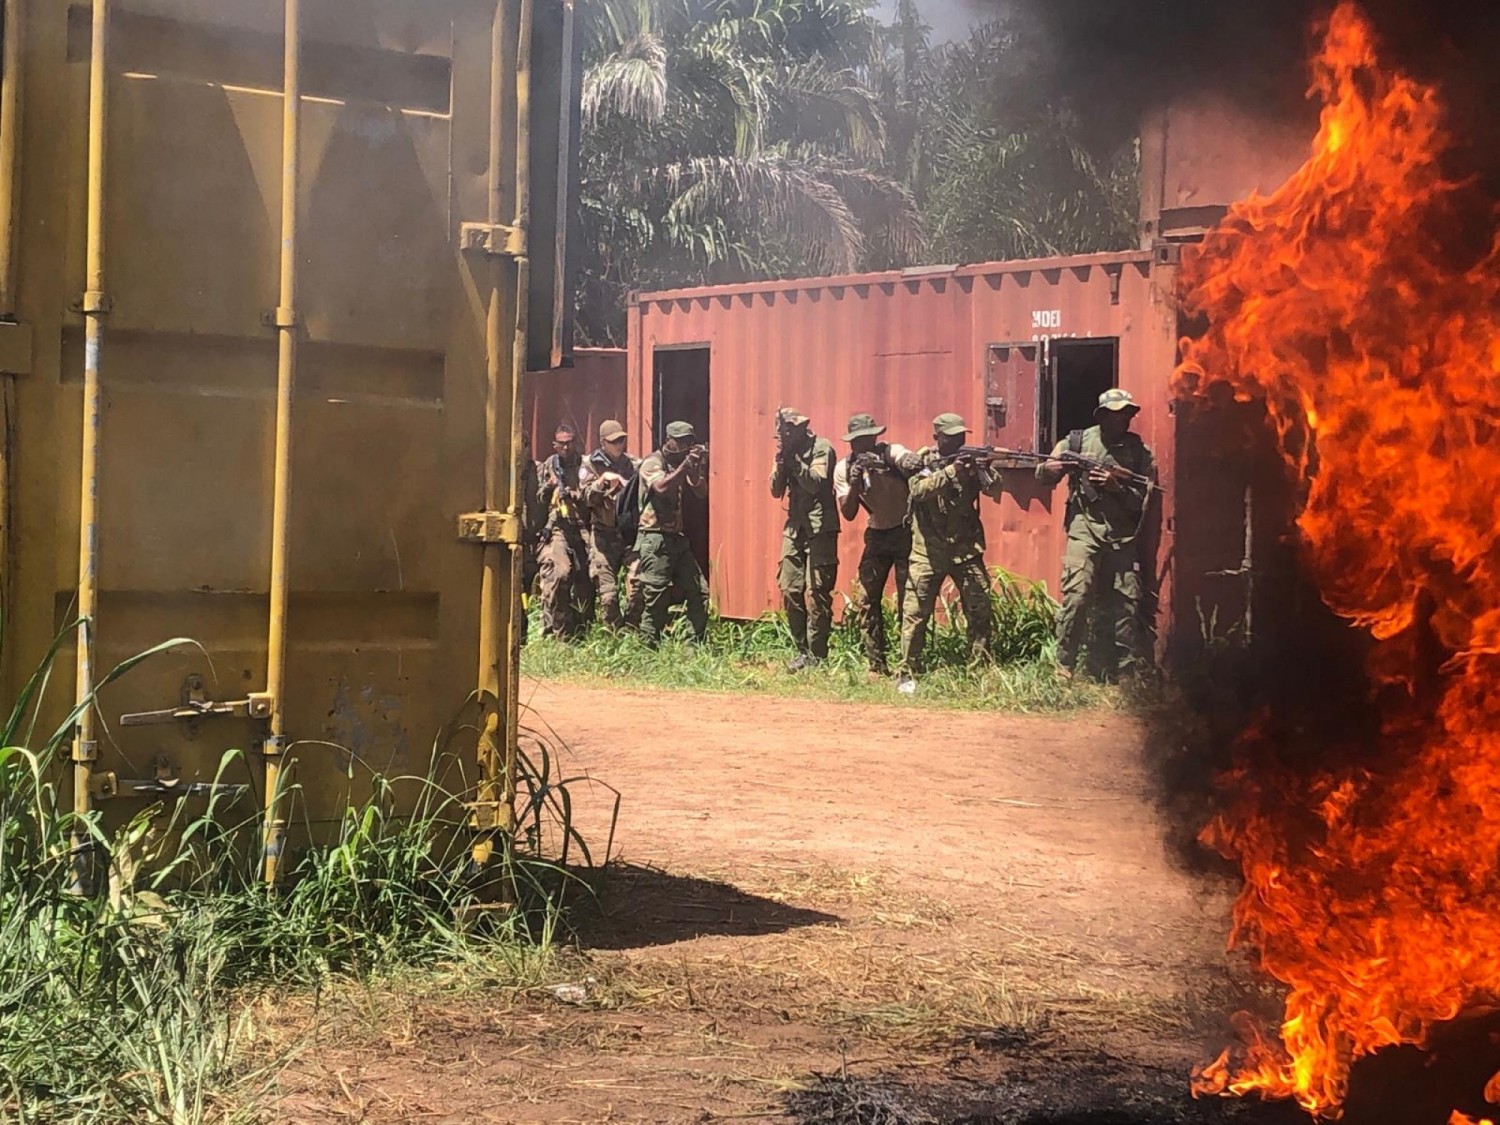 Côte d'Ivoire : Yamoussoukro, un exercice militaire avec la participation des Forces Françaises annoncé du 15 au 20 mai, des coups de feu et des explosions seront entendus